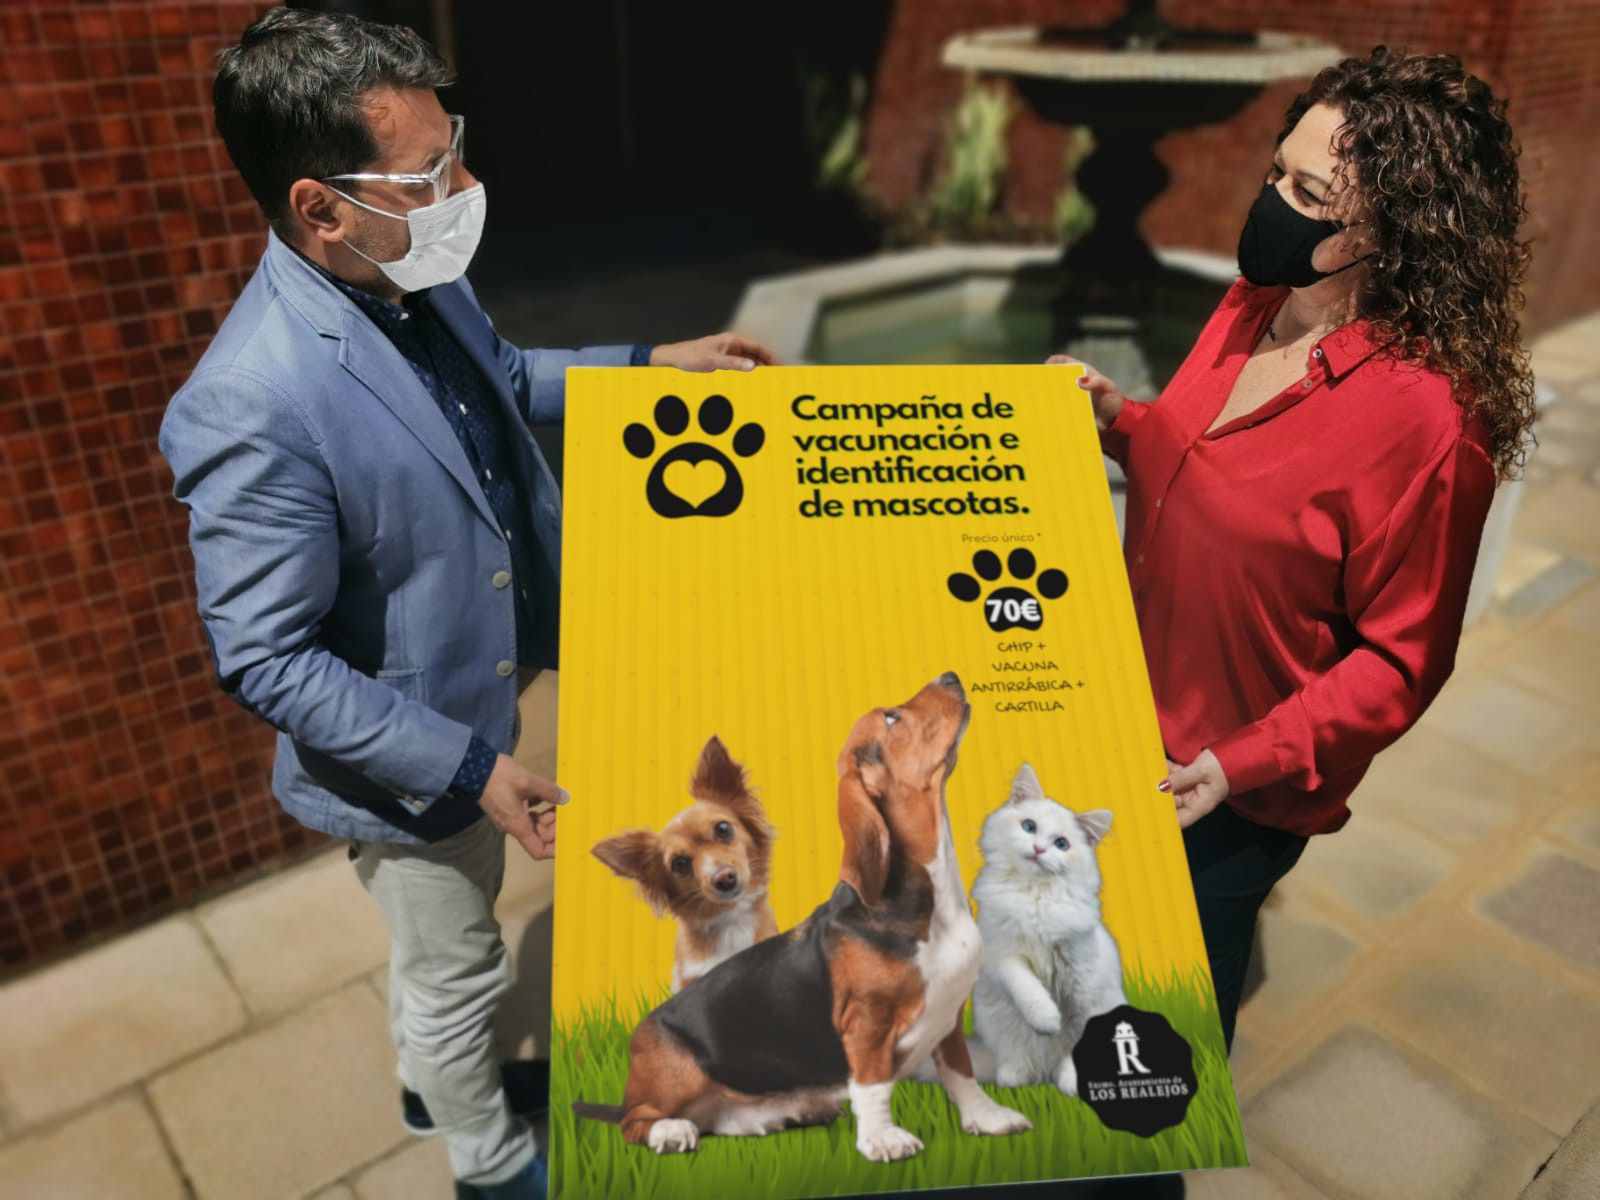 Presentación de la campaña de vacunación e identificación de mascotas en Los Realejos